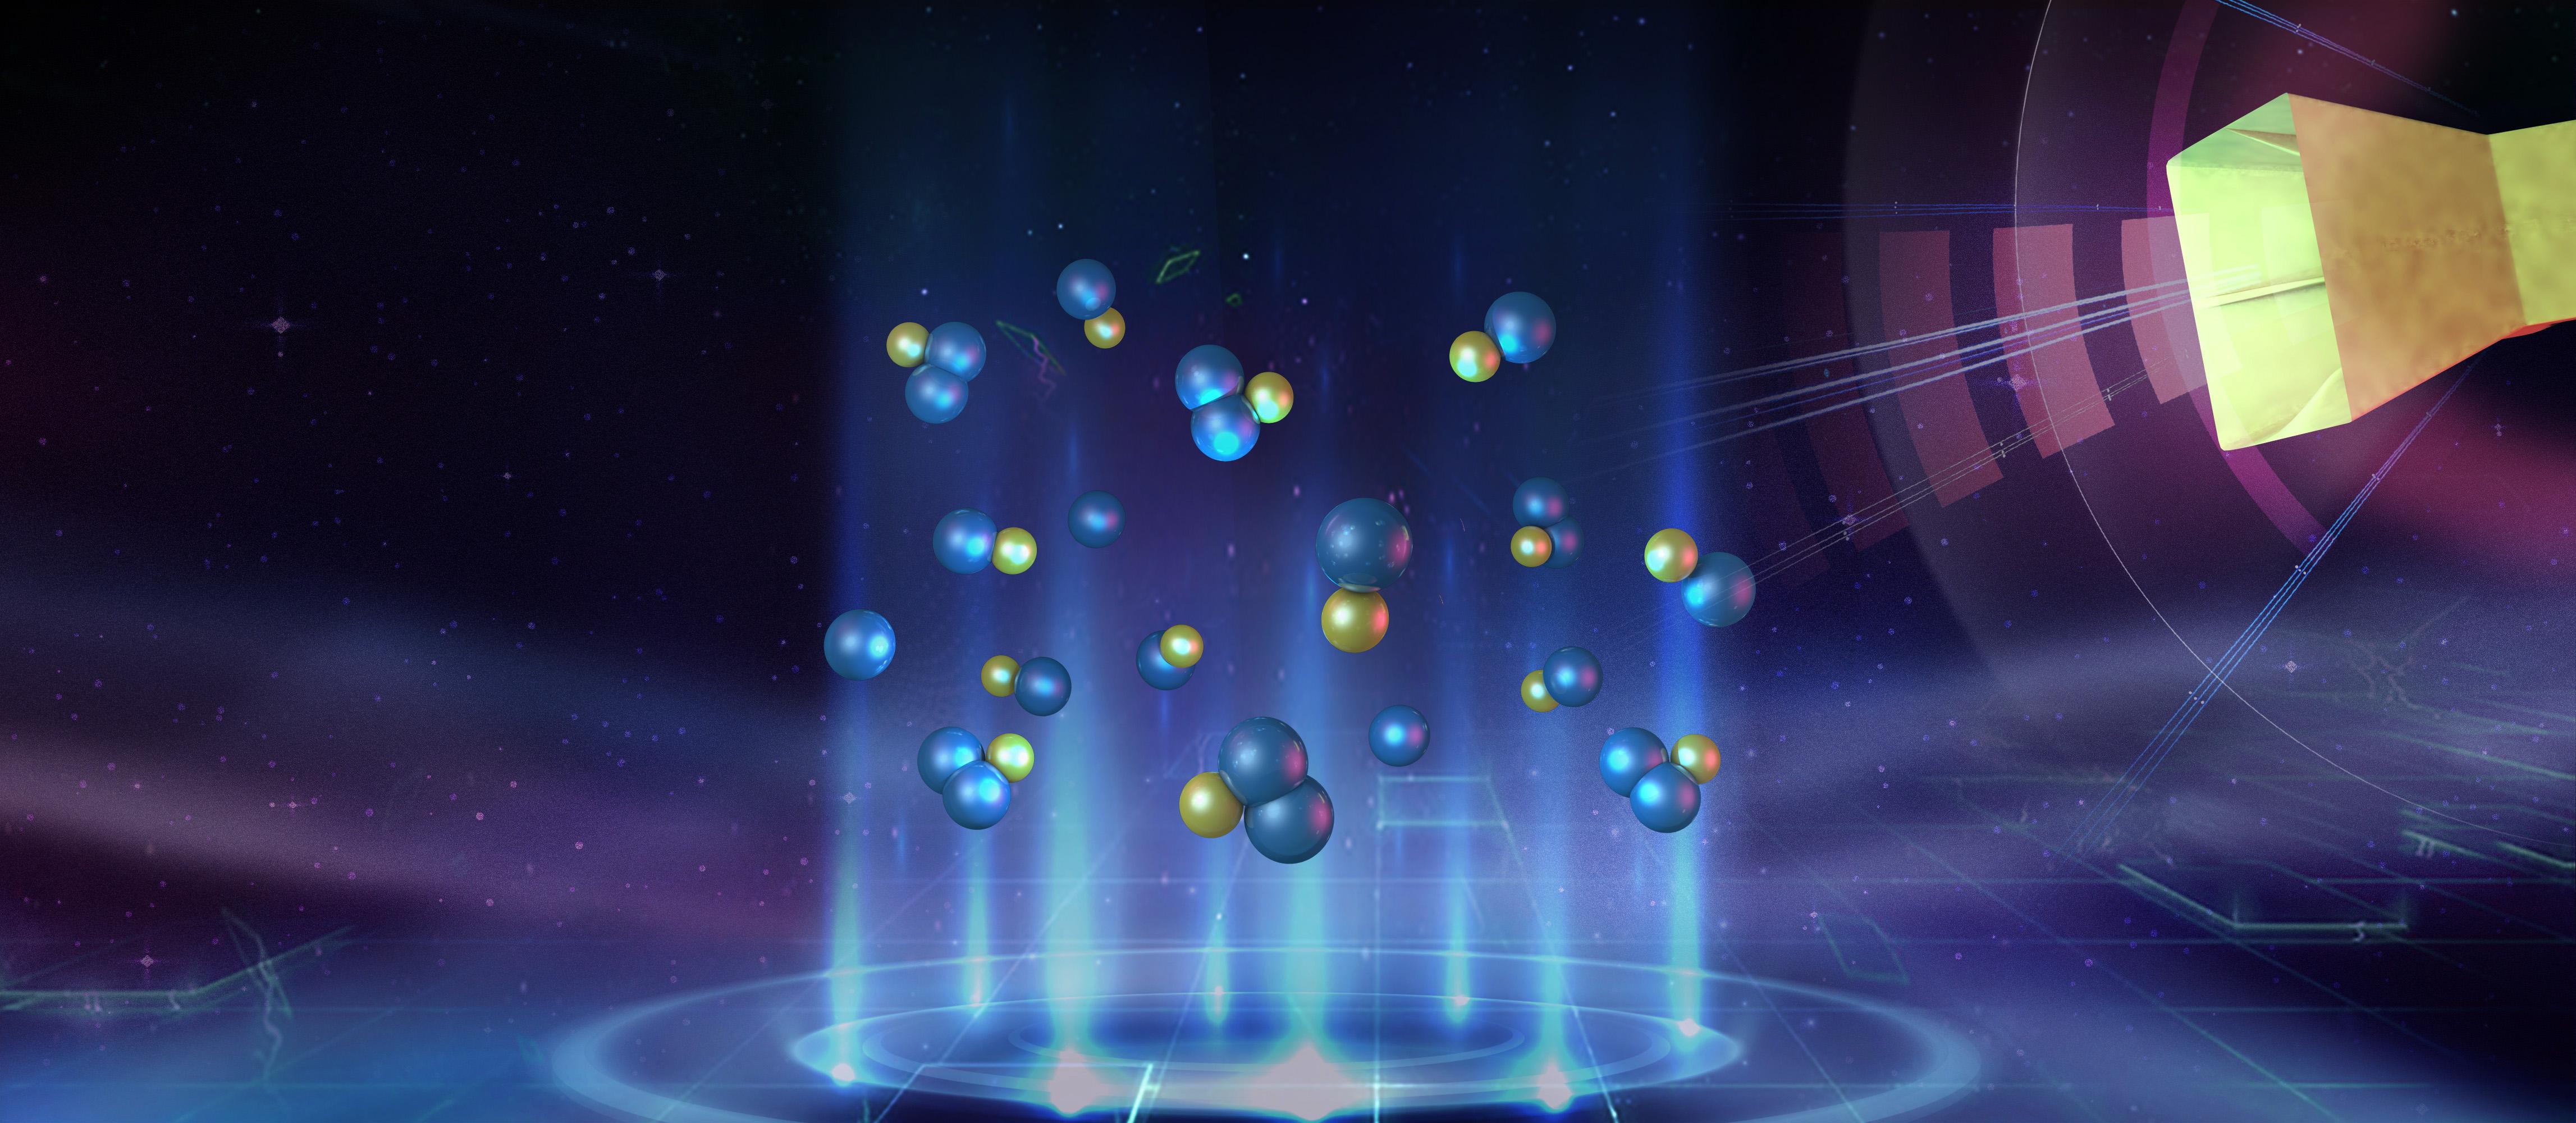 超冷原子分子量子模拟在化学物理研究中取得实质性突破 | 量子物理与量子信息研究部